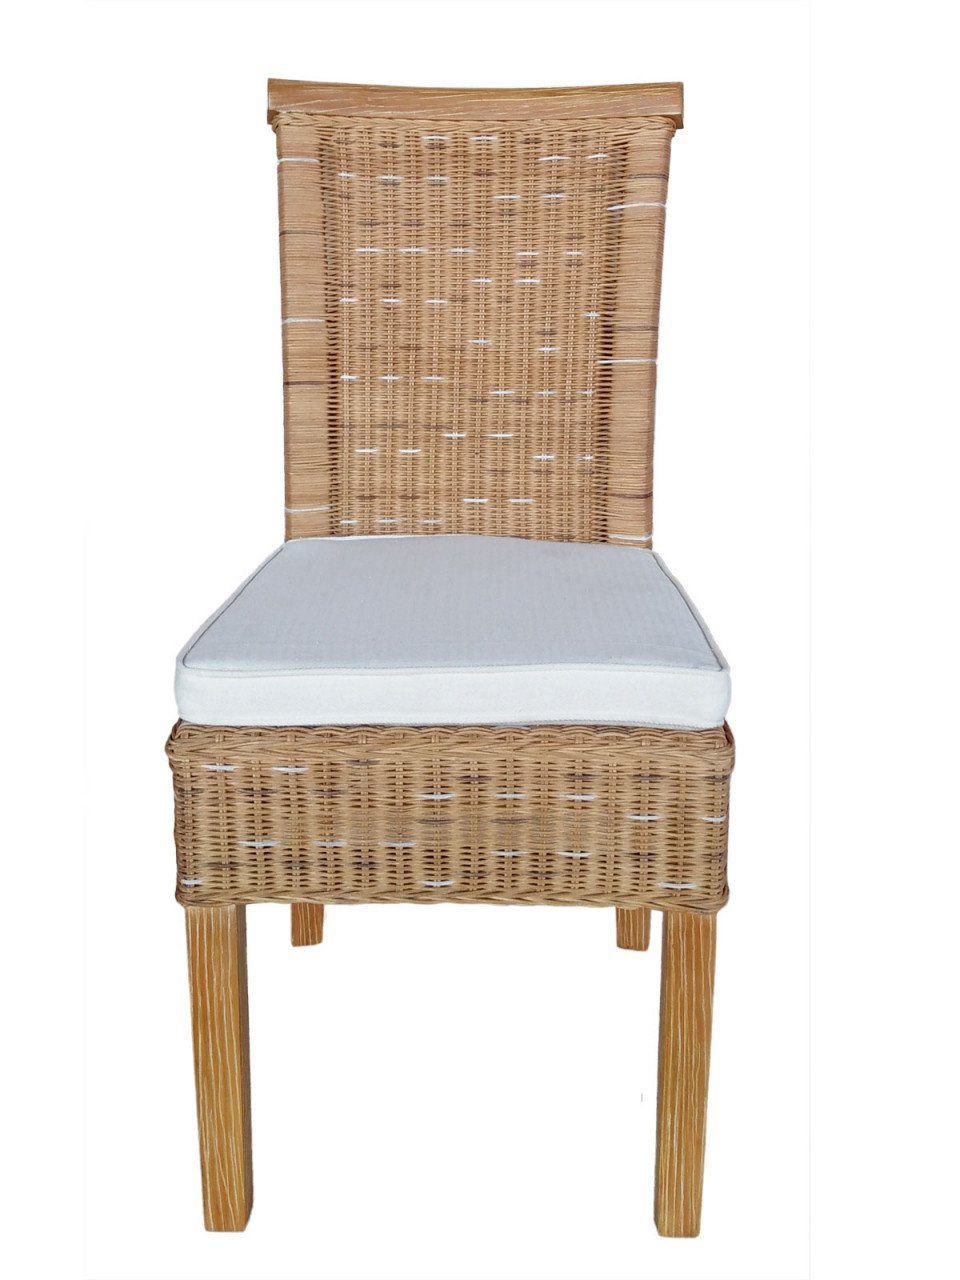 Perth soma S, Soma Sessel Rattanstühle Sessel Esszimmer-Stühle 6 Sitzmöbel Stuhl Set weiß braun oder Stück Sitzplatz